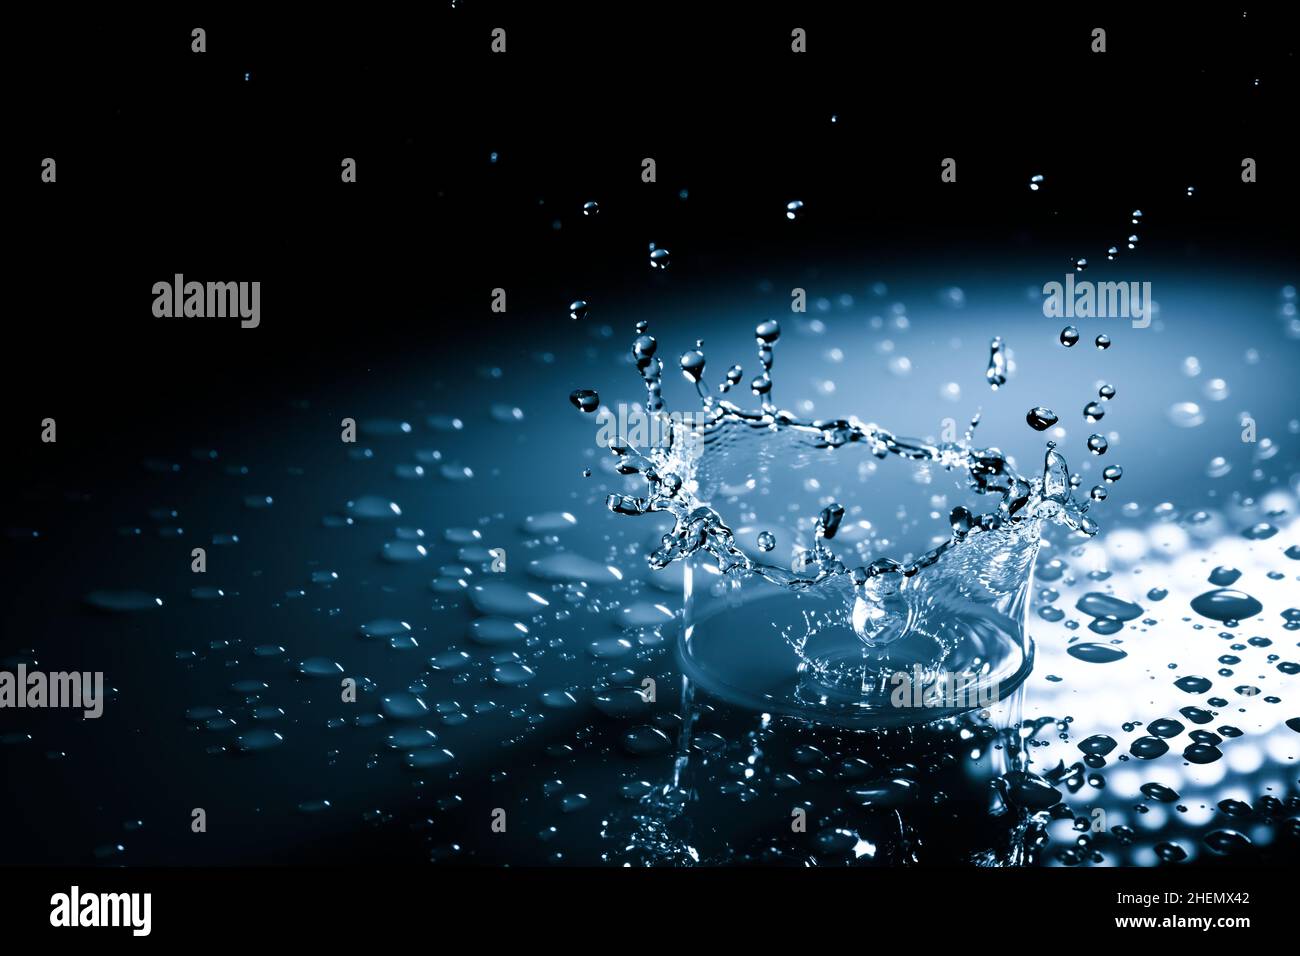 Wunderschöne Spritzkrone aus einem Tropfen Wasser, der auf eine harte Oberfläche fällt. In blauem Licht auf schwarzem Hintergrund Stockfoto